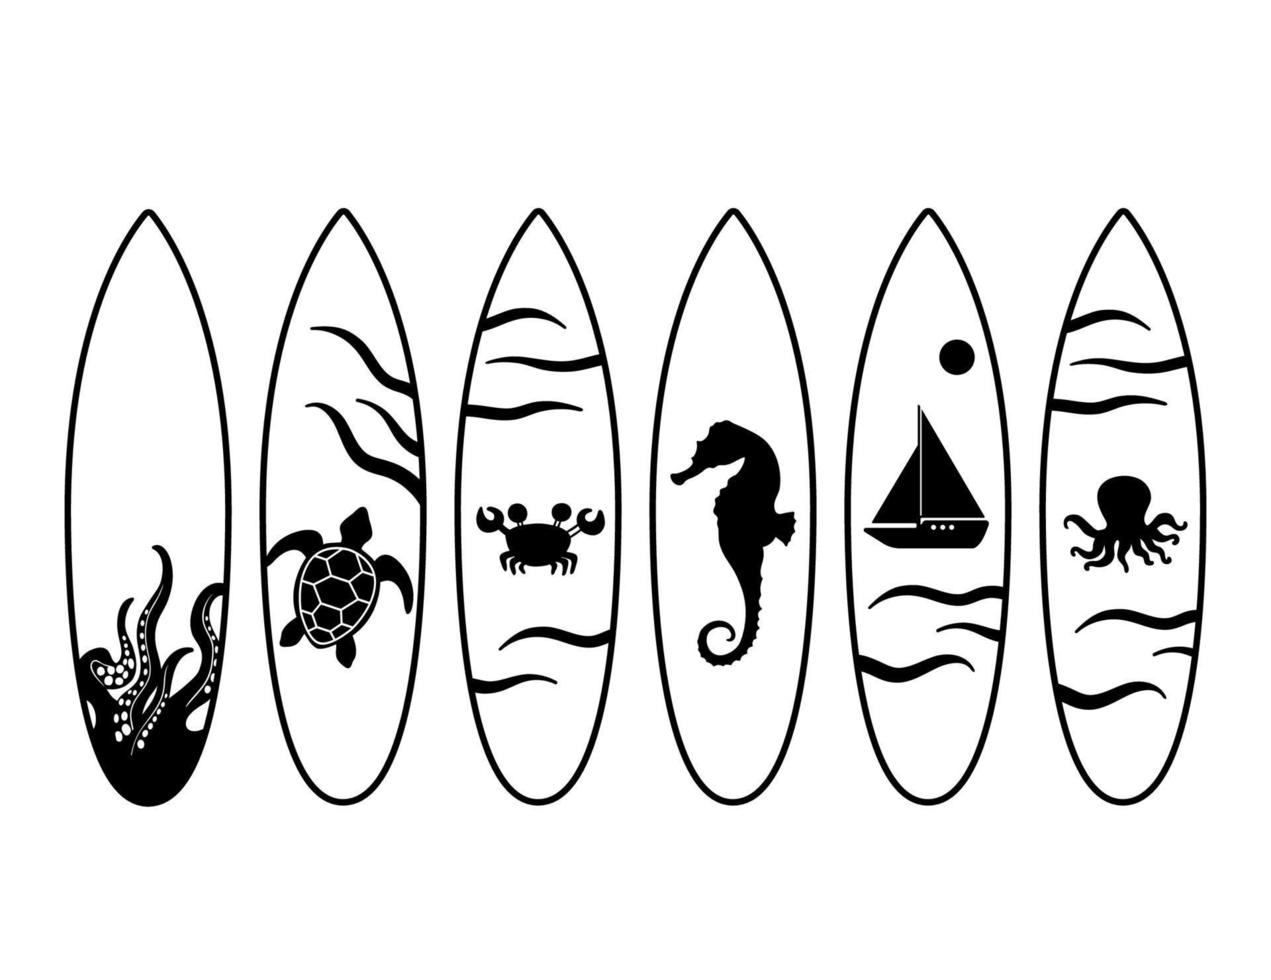 juego de tablas de surf negras con pulpo, tortuga, barco, dibujo de caballitos de mar. ilustración vectorial aislado sobre fondo blanco vector